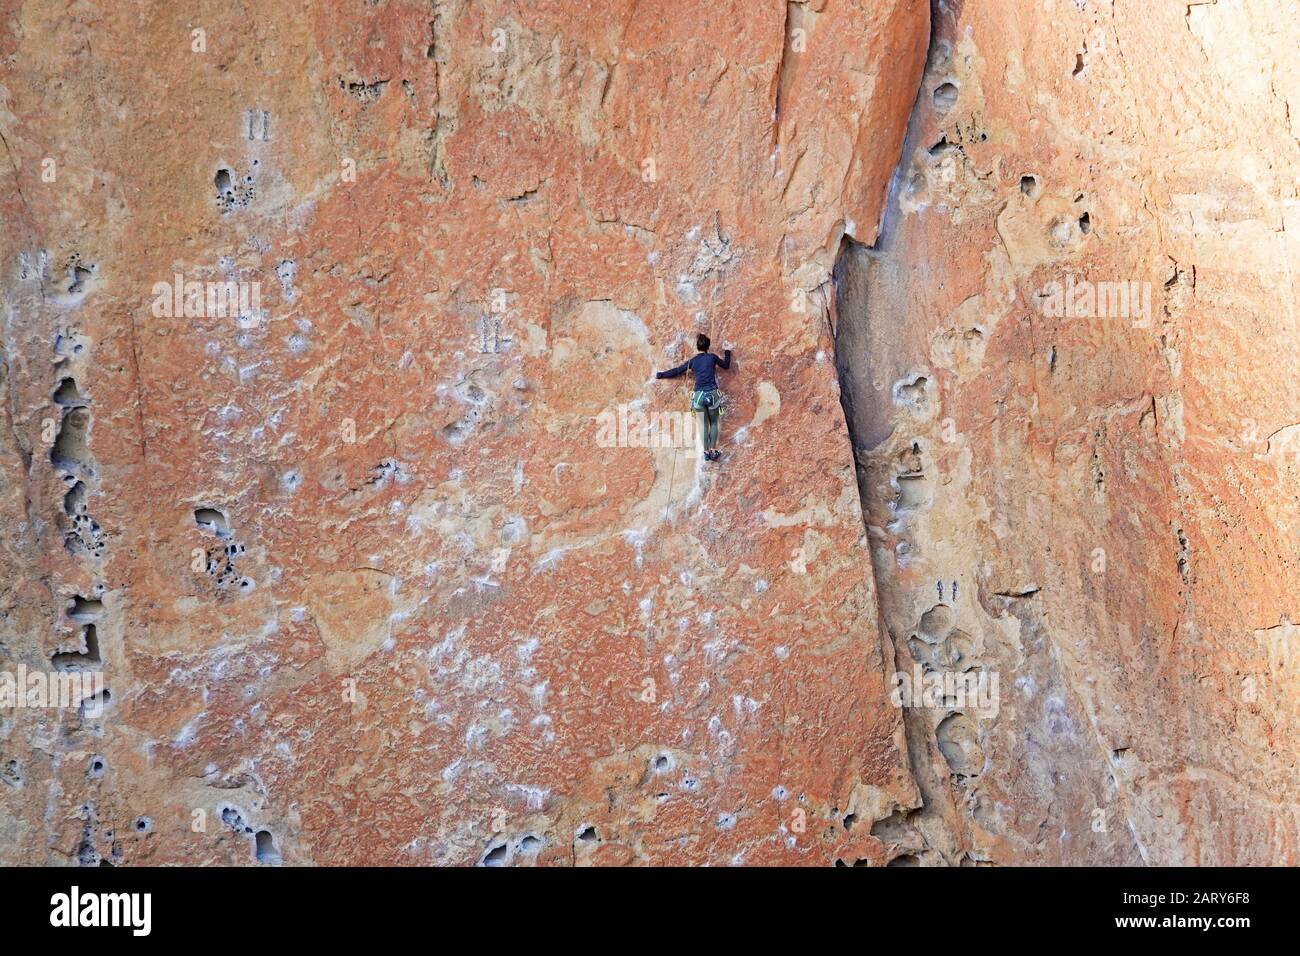 Uno scalatore di roccia negozia un muro a Smith Rock state Park in Oregon ner il villaggio di Terrebonne. Fatto di tufo, o cenere vulcanica indurita, la roccia ha Foto Stock